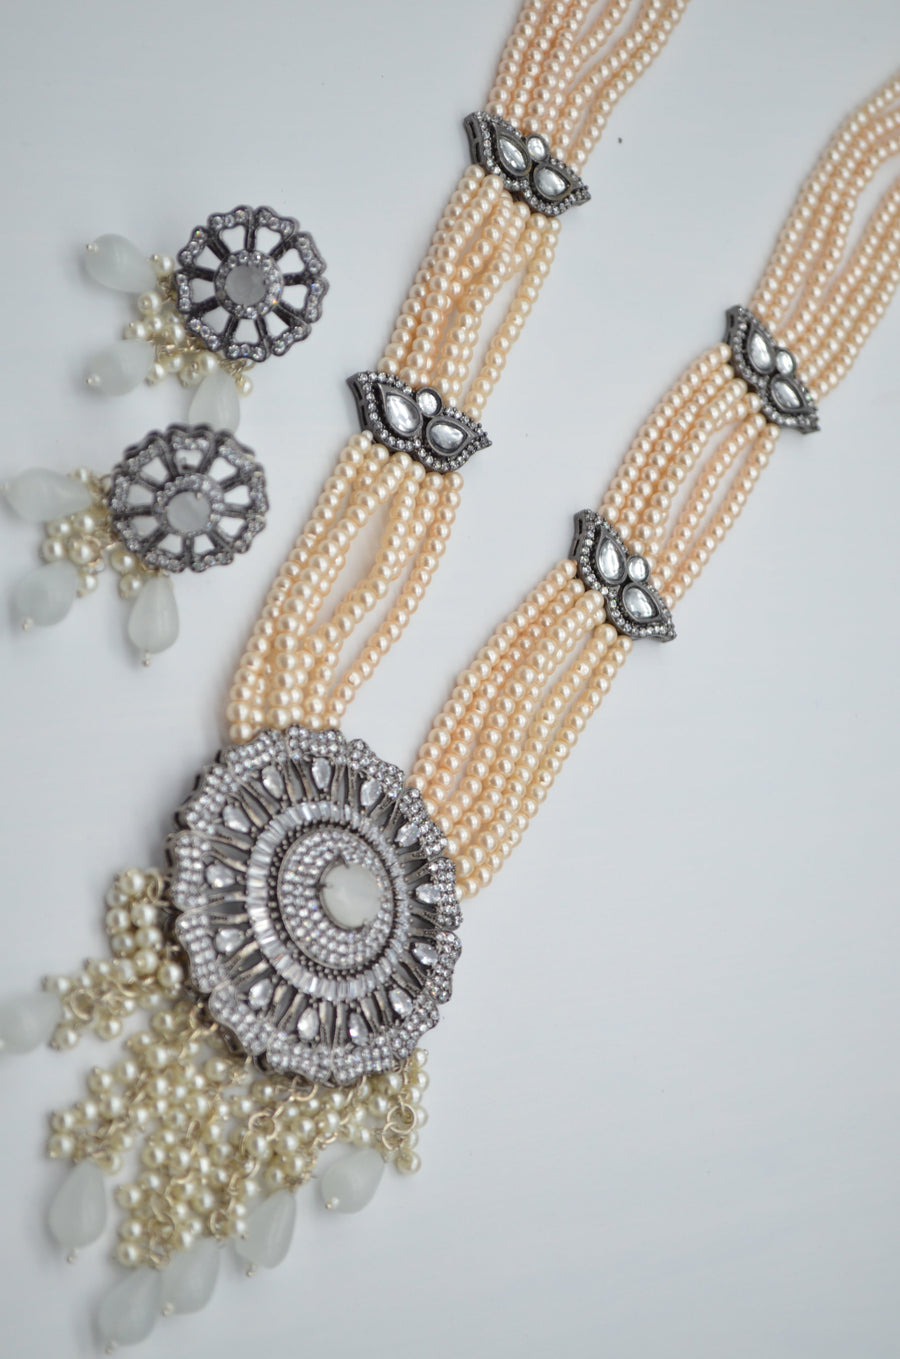 Designer Cz Center Pendant Long Necklace Set - Victorian Finish Necklaces